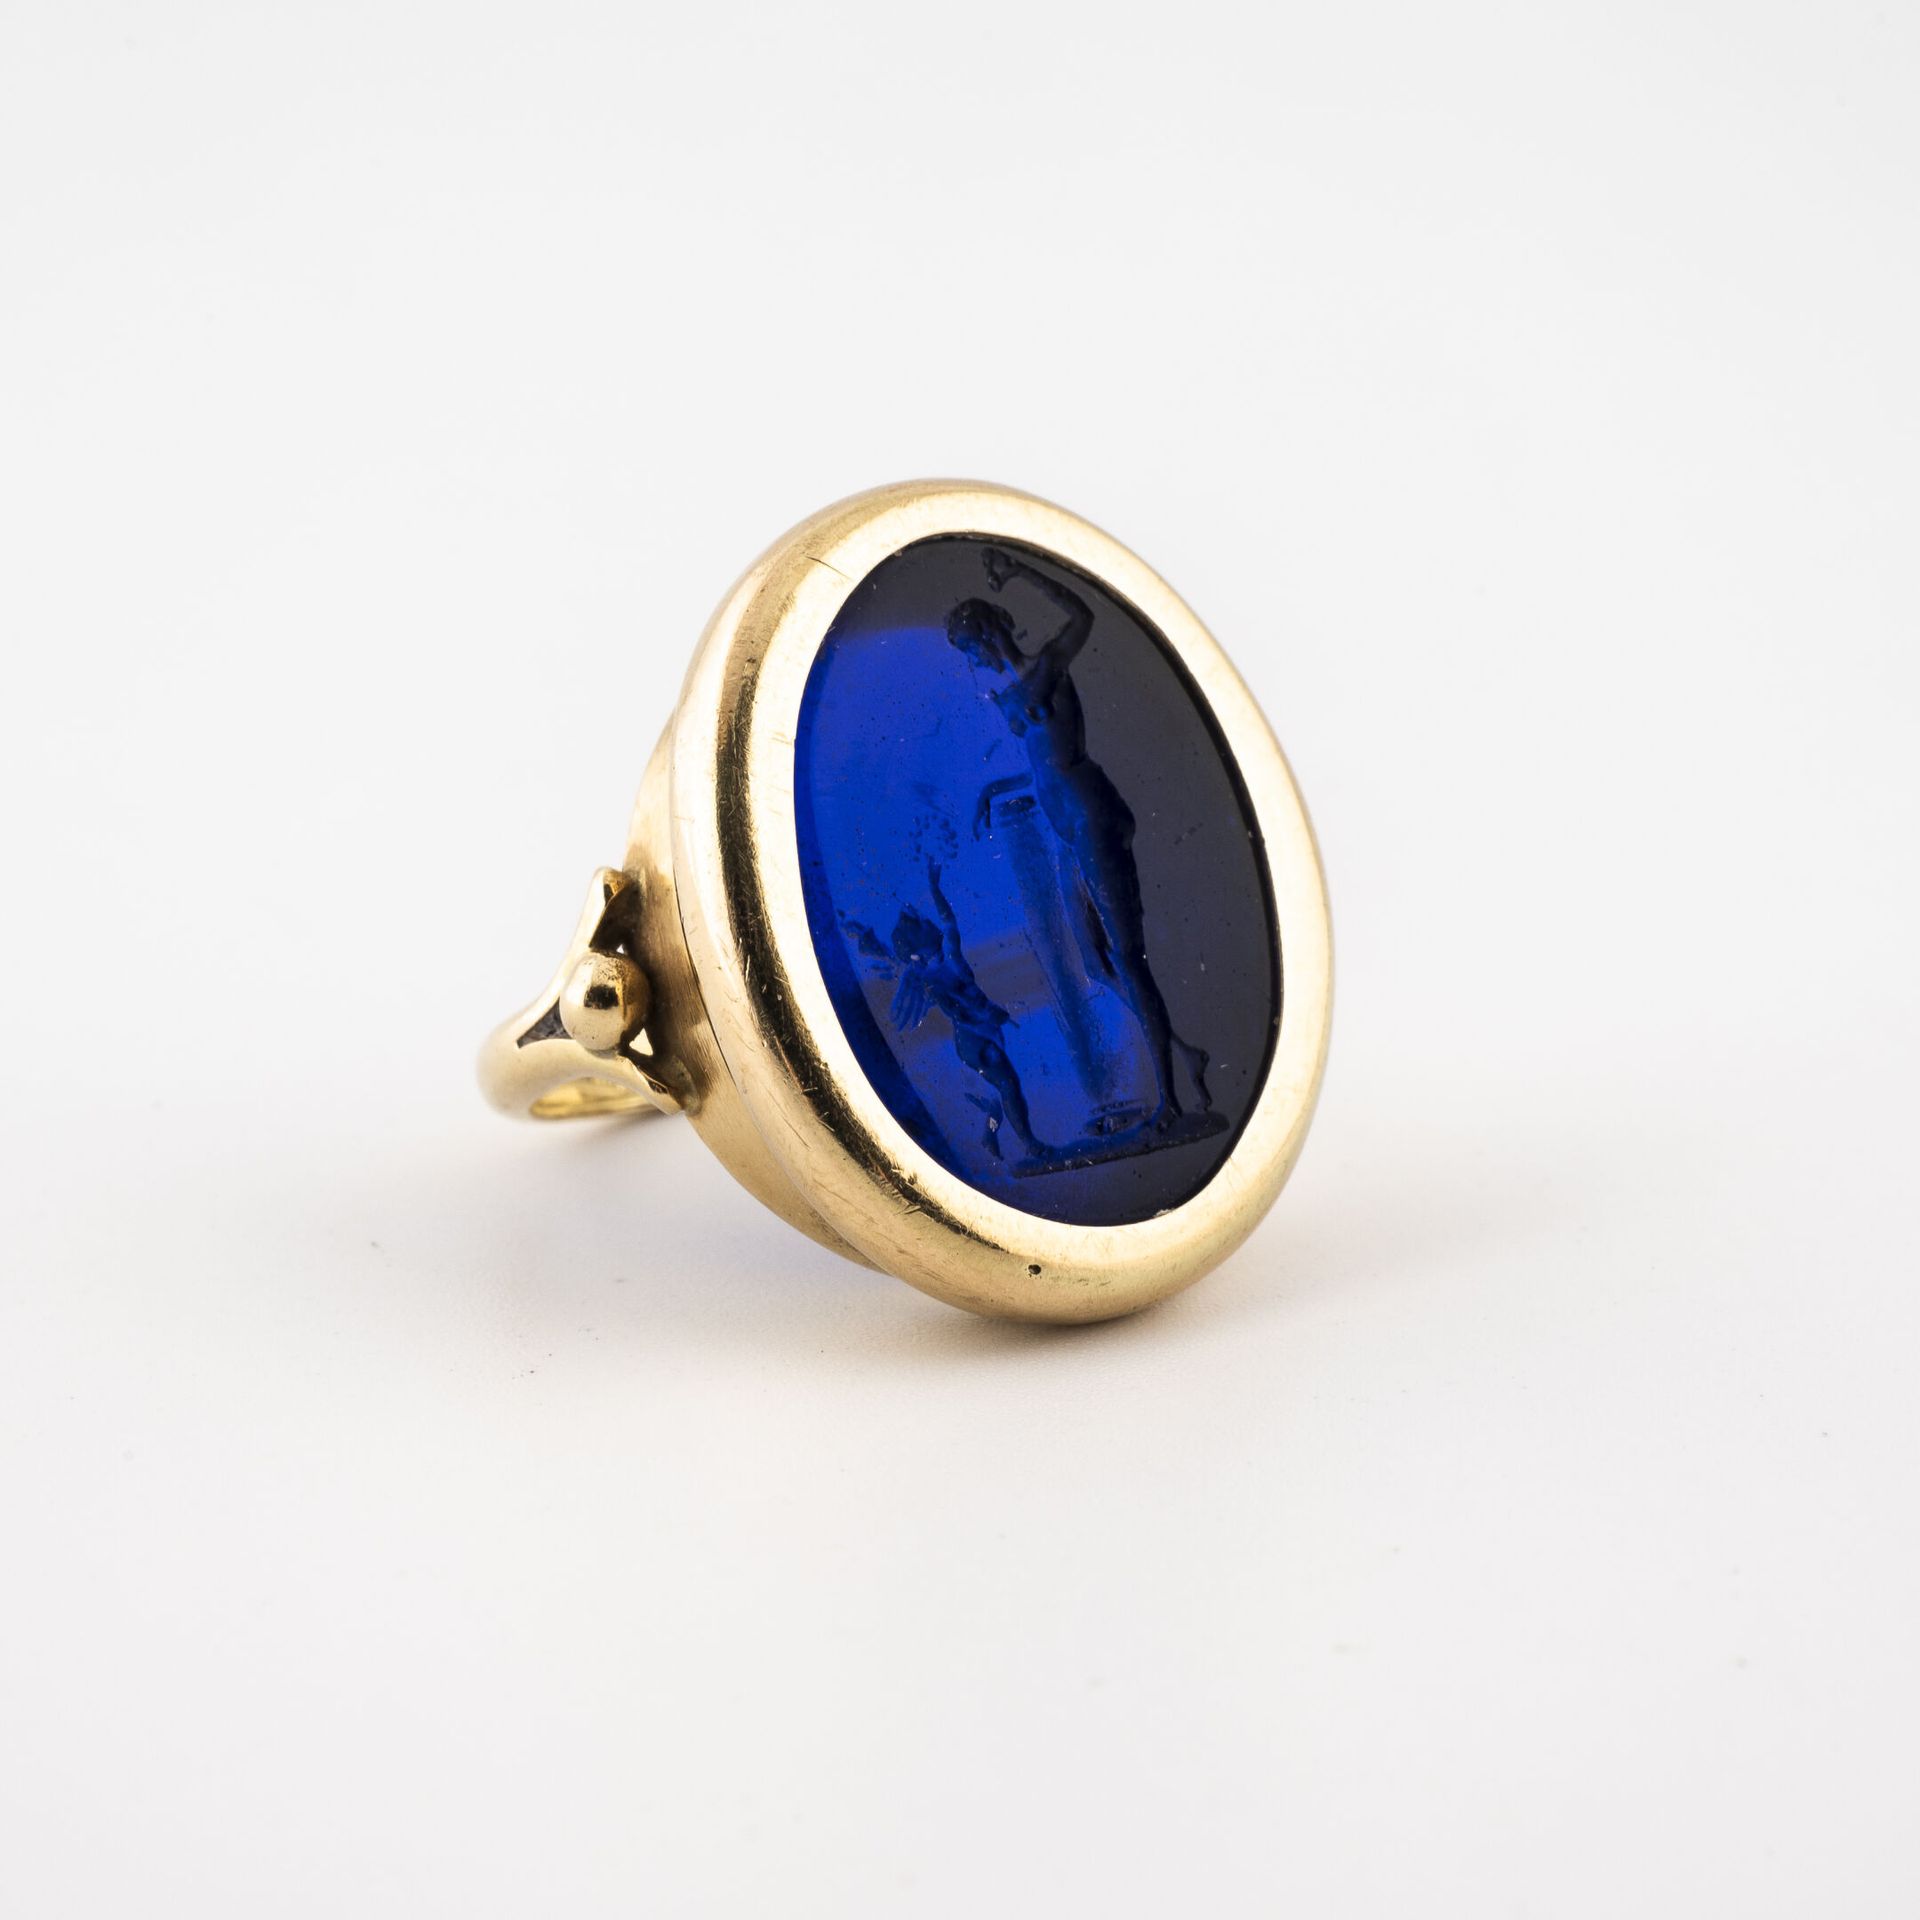 Null 一枚黄金（750）戒指，椭圆形的顶部镶嵌着蓝色的玻璃凹版，描绘了一个靠在基座上的裸体女人和一个拿着皇冠的普特人。

毛重：8.3克。- 手指大小：51&hellip;